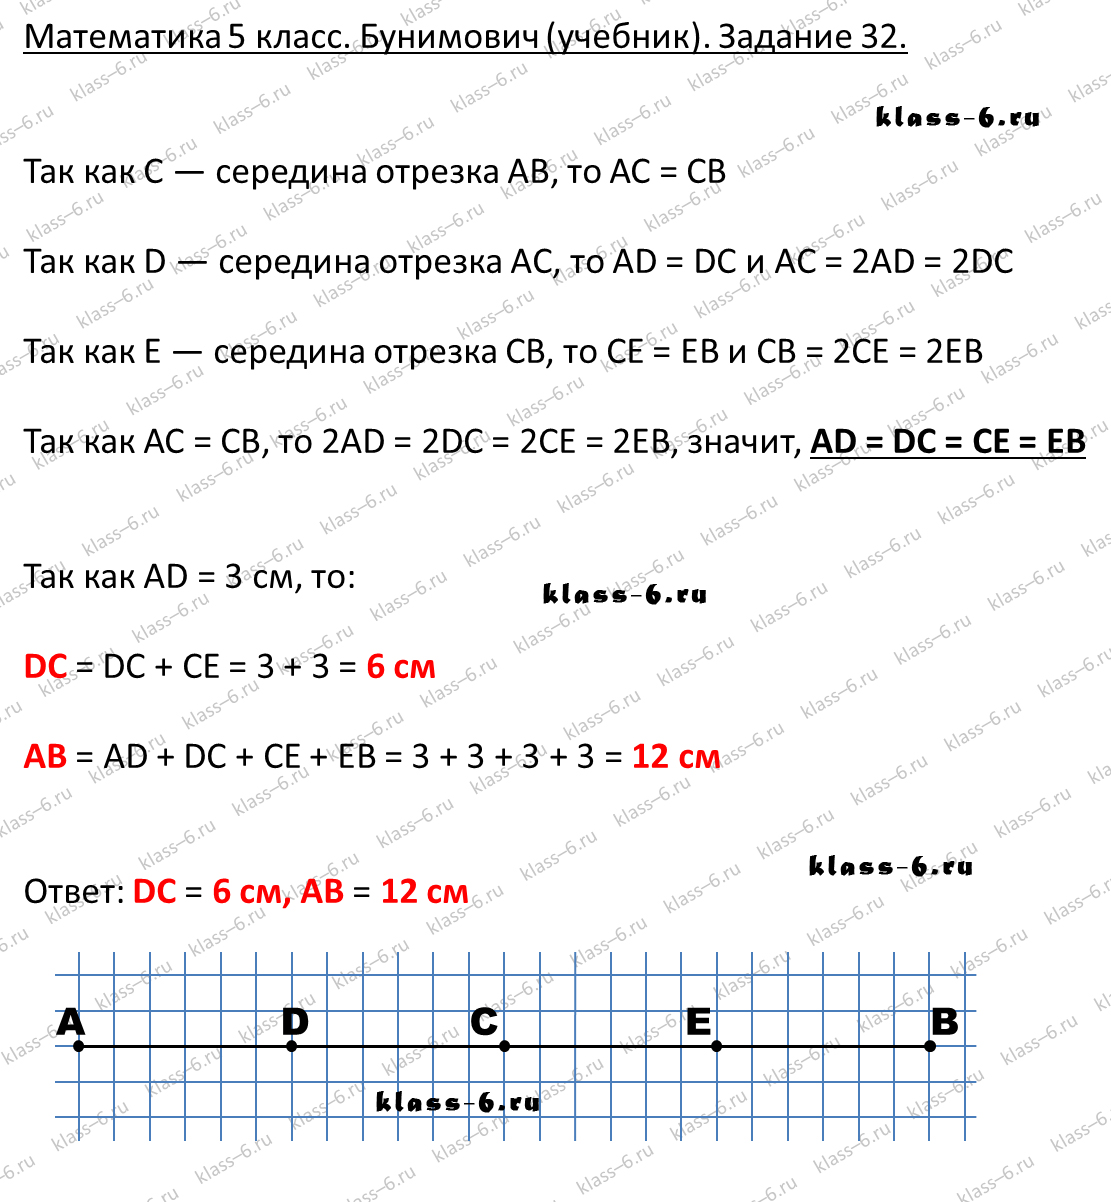 решебник и гдз по математике учебник Бунимович 5 класс задание 32